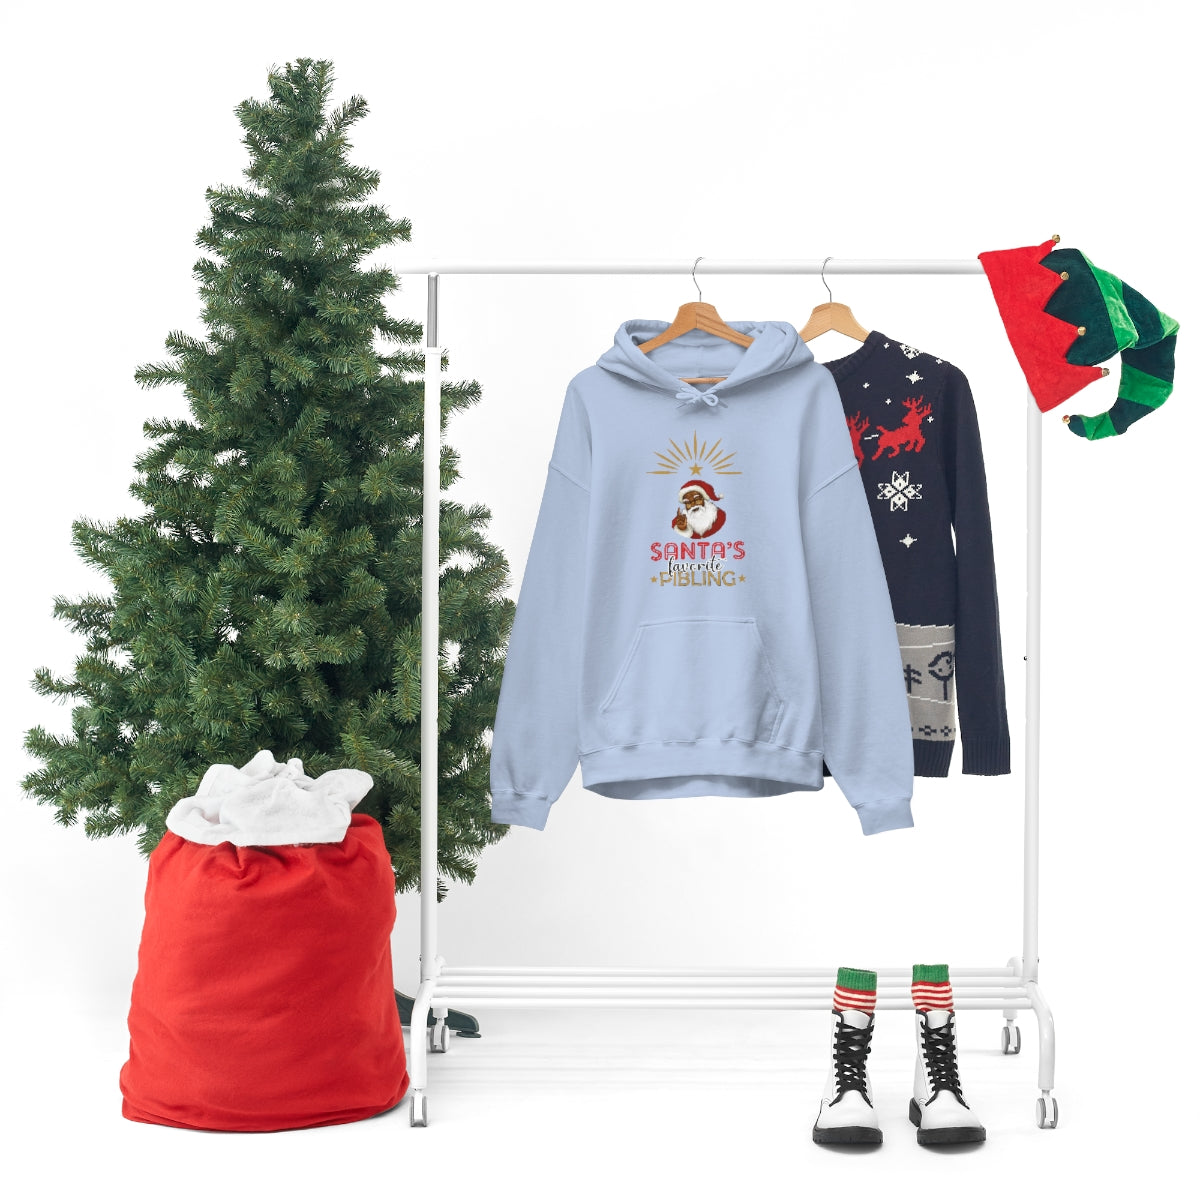 Christmas Custom Hoodie Unisex Custom Hoodie , Hooded Sweatshirt , SANTA’S FAVORITE Pibling Printify